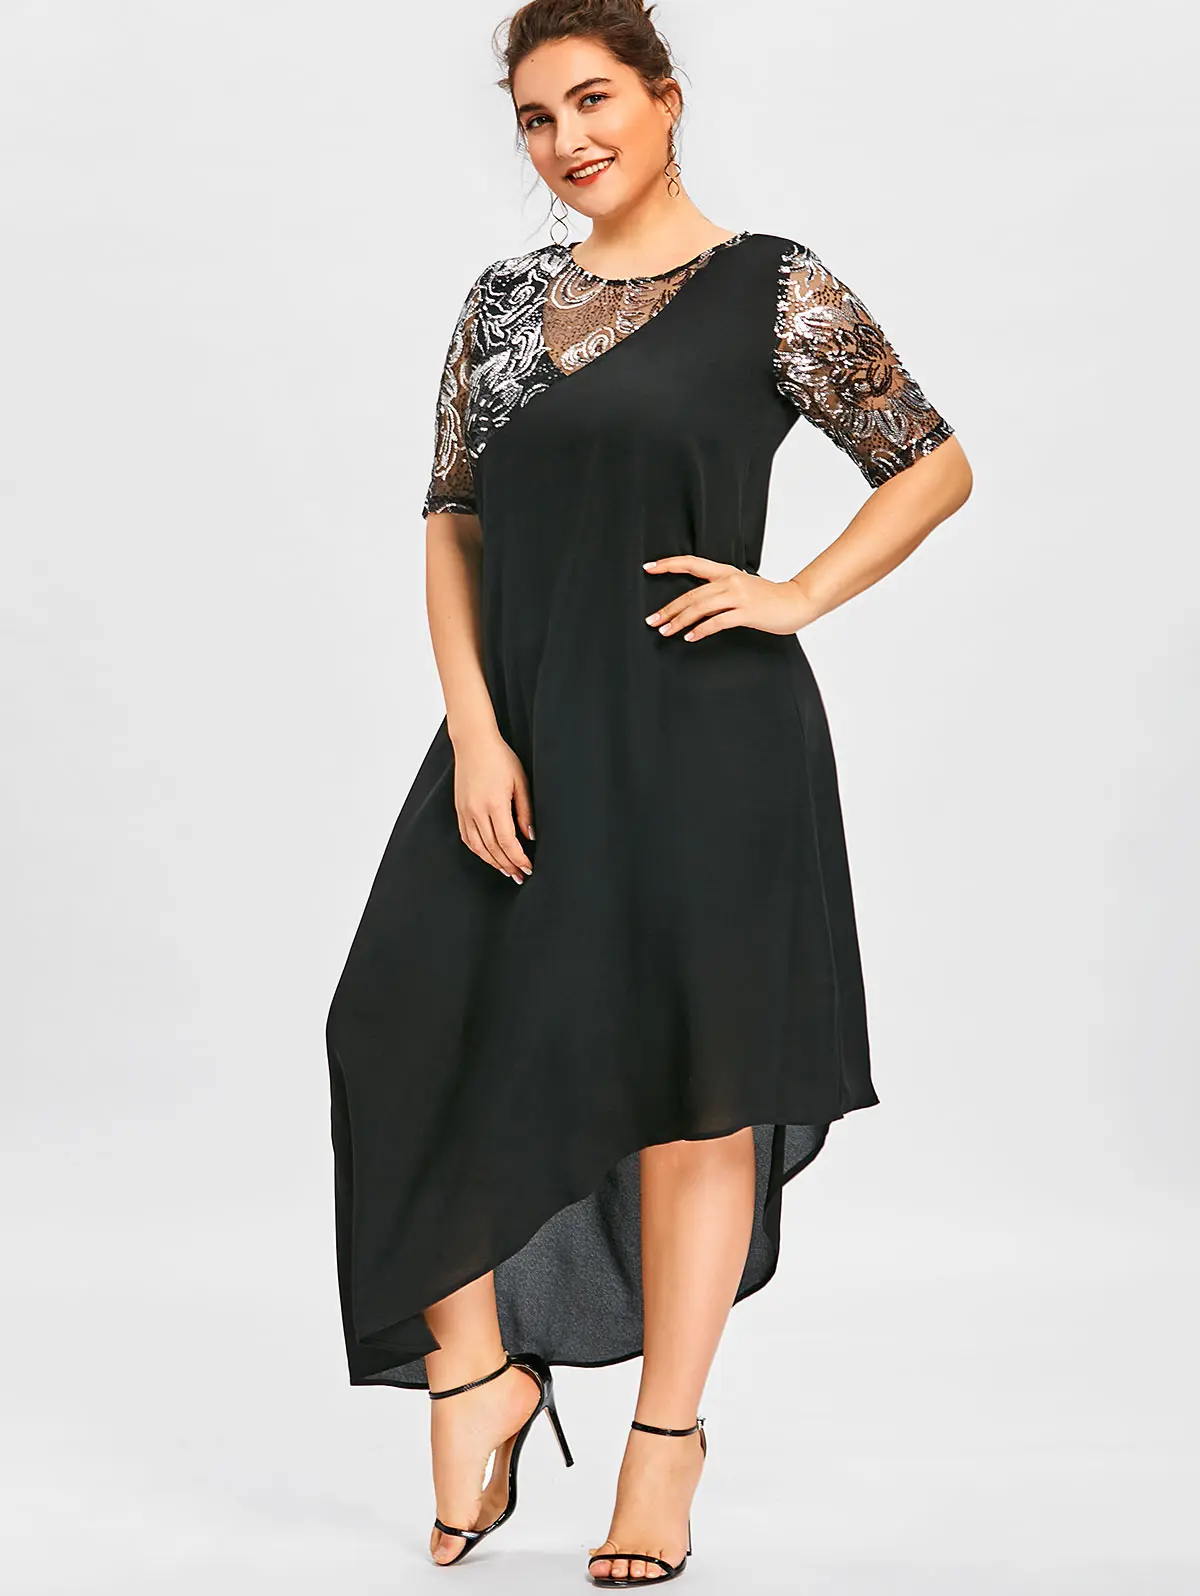 Wipalo Женское ассиметричное вечернее коктельное платье макси большого размера с паетками, элегантное летнее черное платье 5XL, платье с коротким рукавом